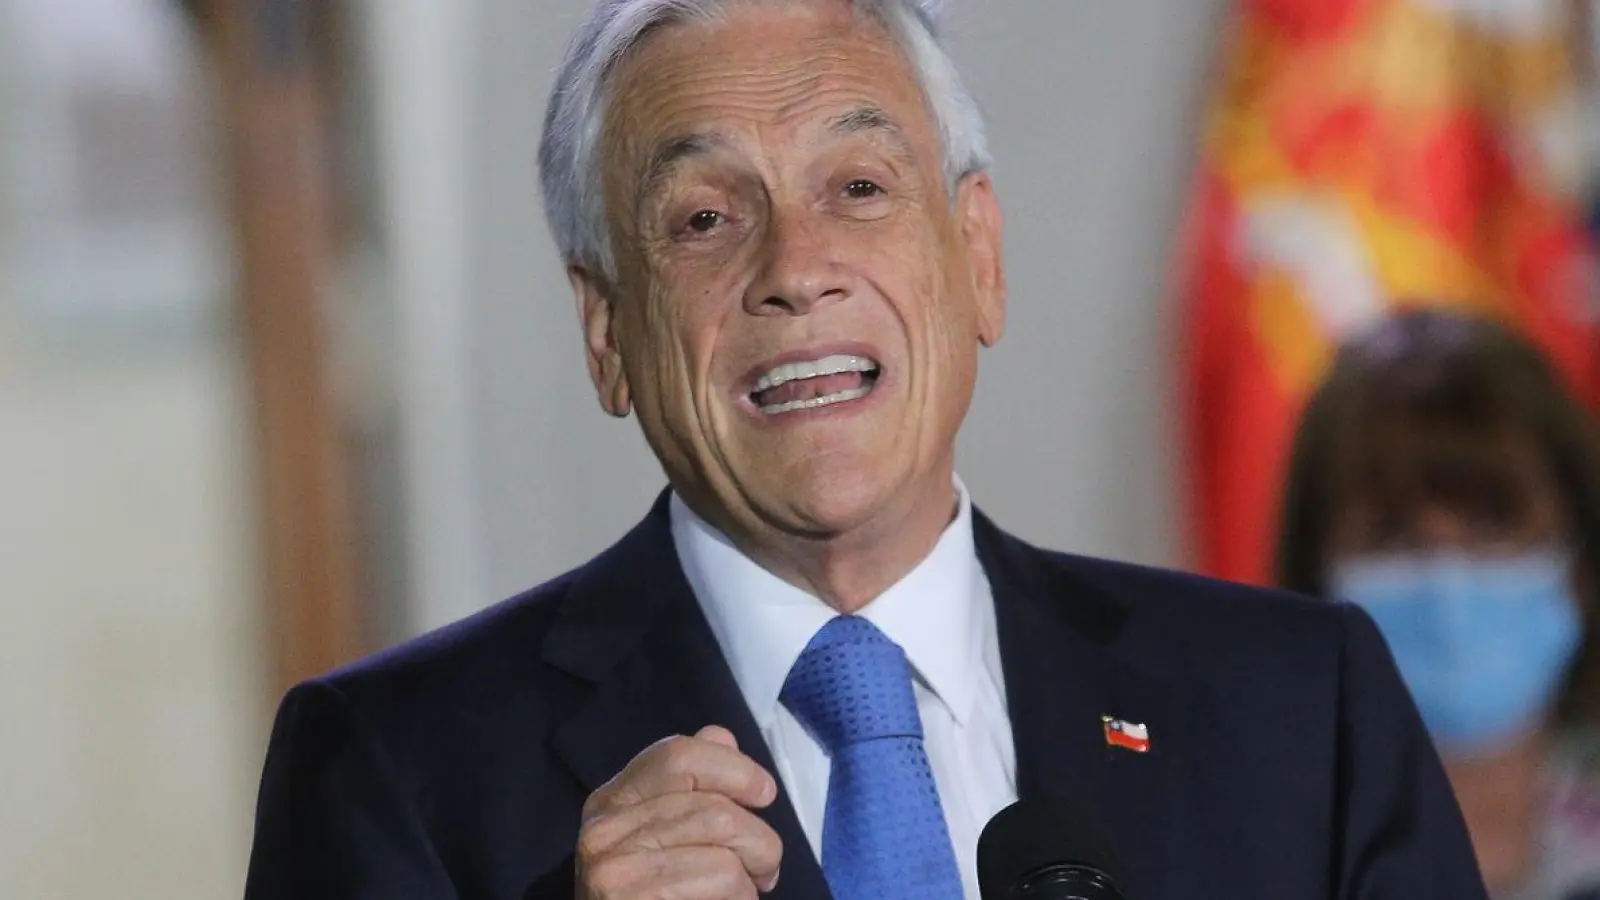 Sebastián Piñera war von 2010 bis 2014 und von 2018 bis 2022 Präsident Chiles. (Foto: Diego Martin/Agencia Uno/dpa)